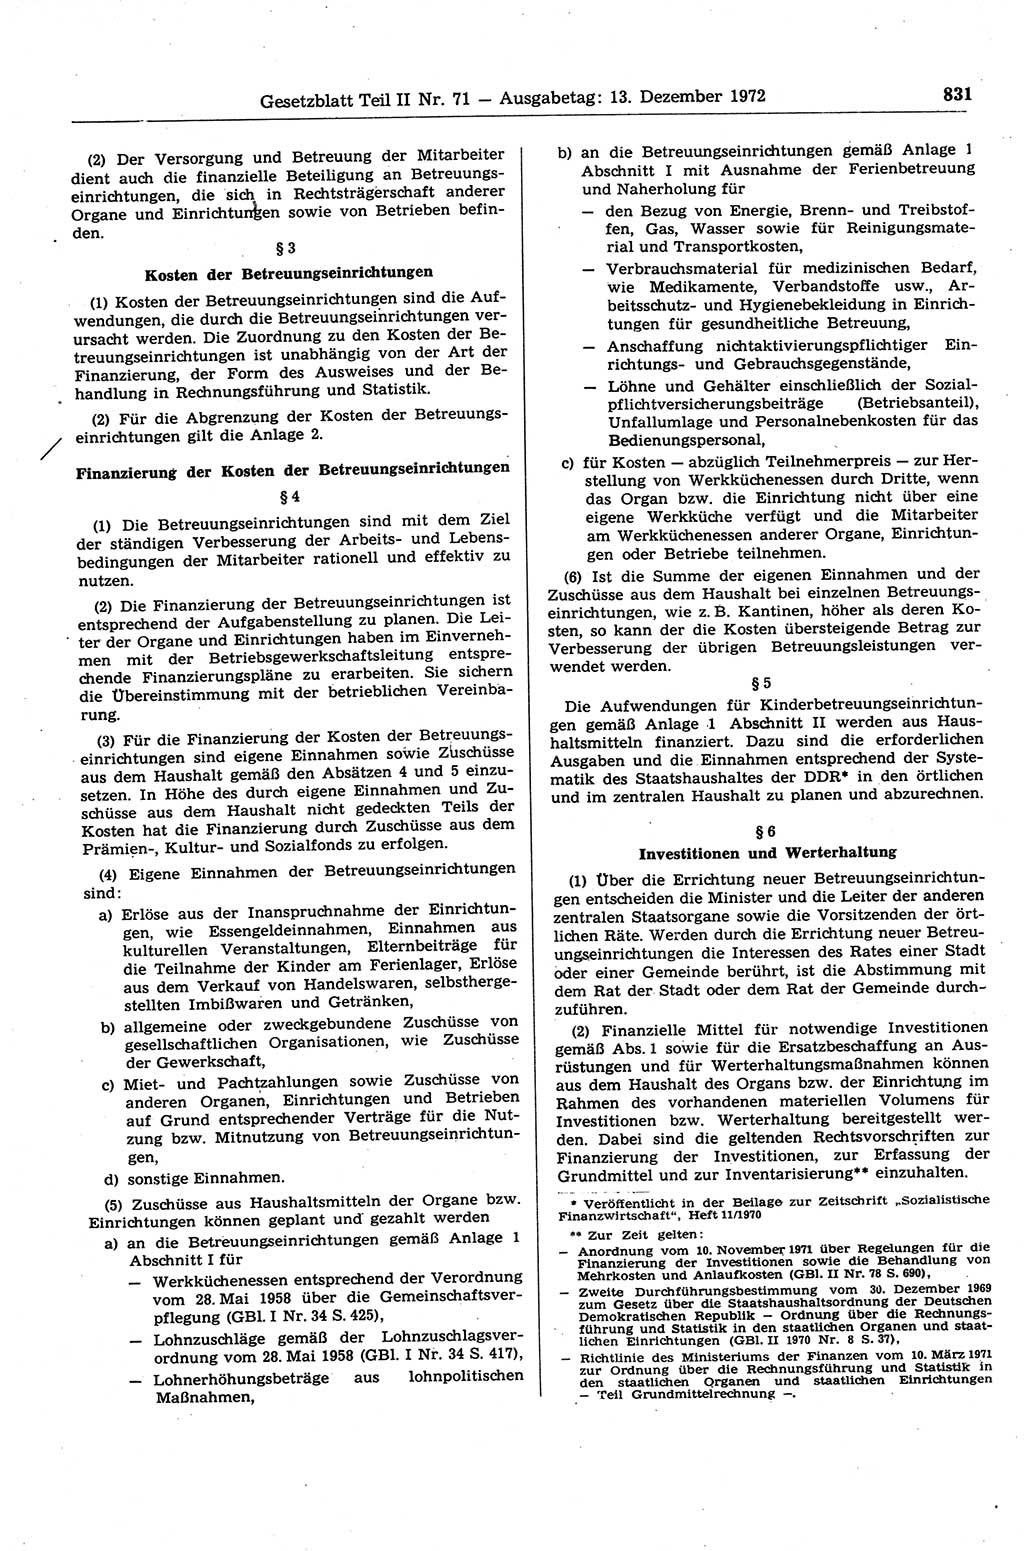 Gesetzblatt (GBl.) der Deutschen Demokratischen Republik (DDR) Teil ⅠⅠ 1972, Seite 831 (GBl. DDR ⅠⅠ 1972, S. 831)